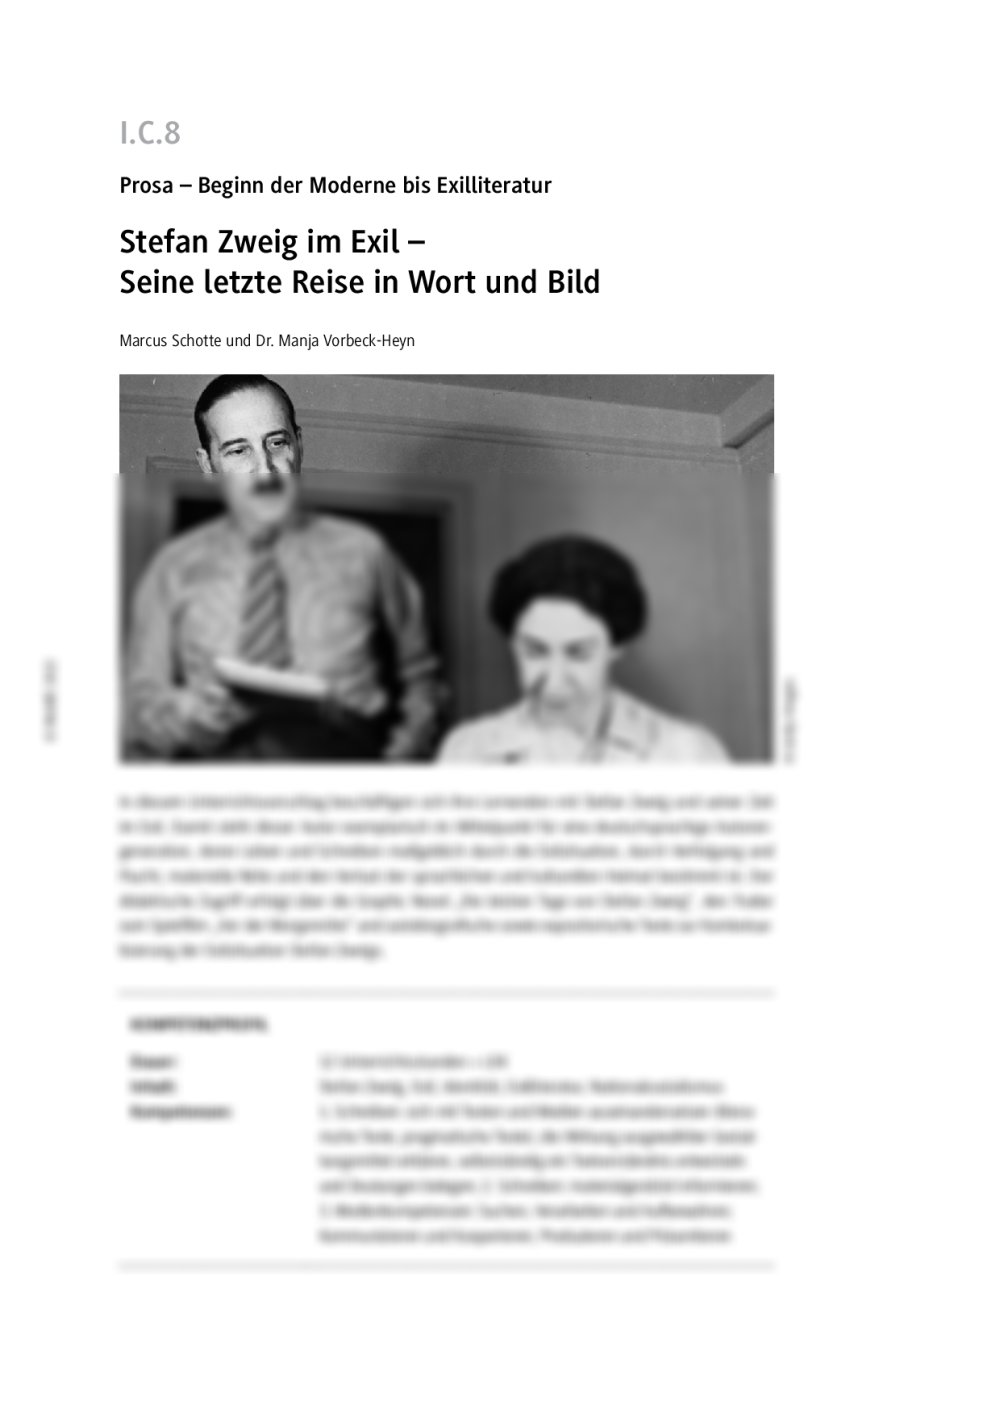 Stefan Zweig im Exil - Seite 1